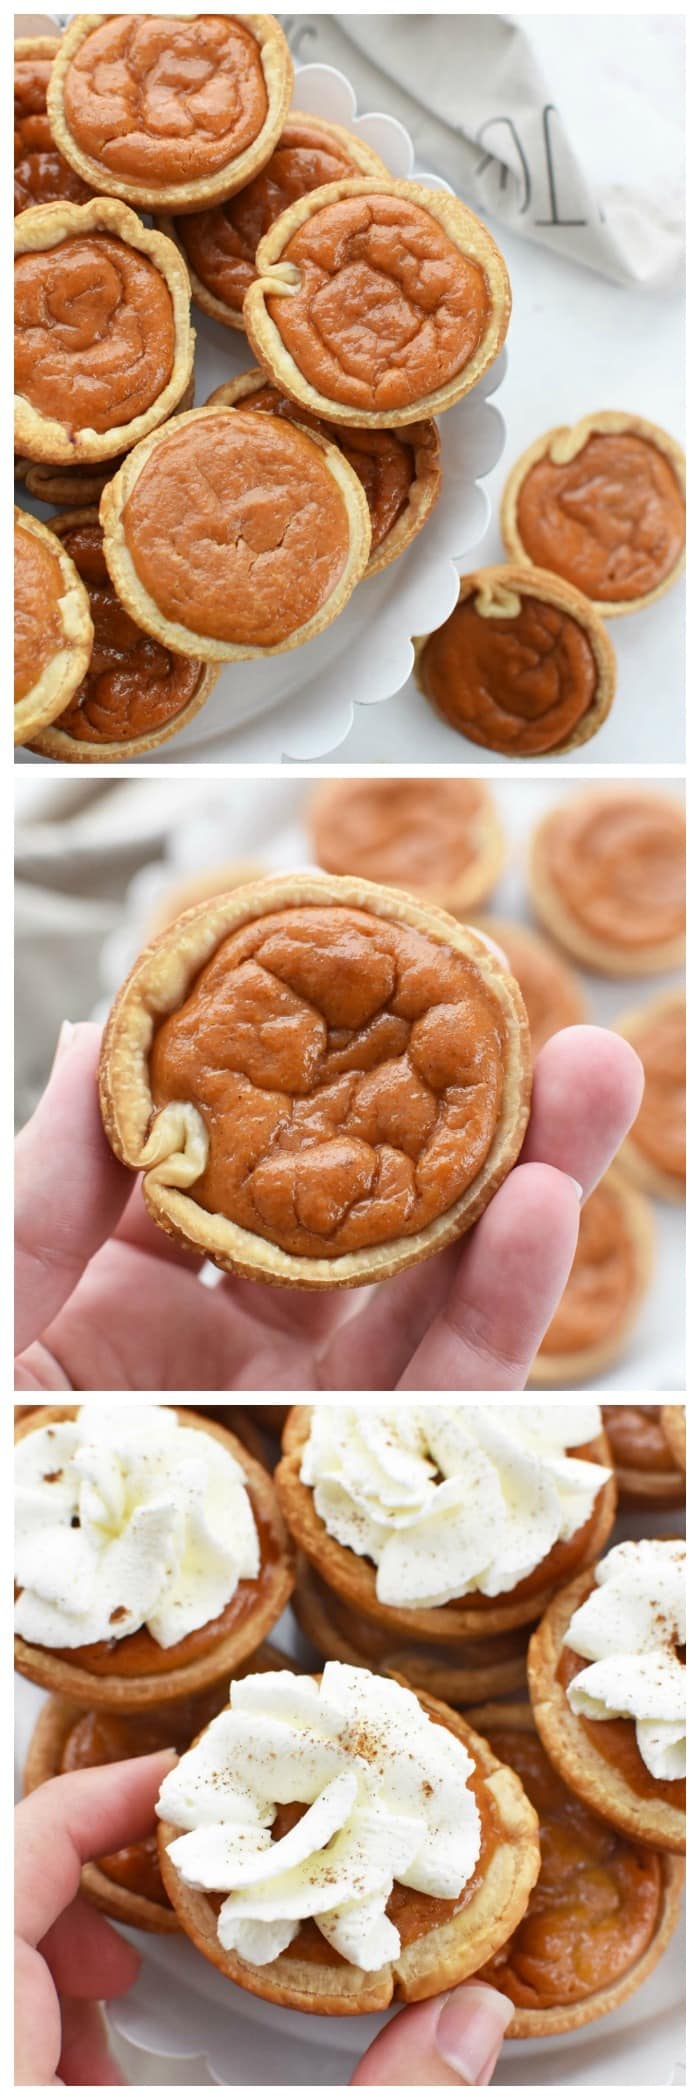 Mini Pumpkin Pies in a Muffin Tin